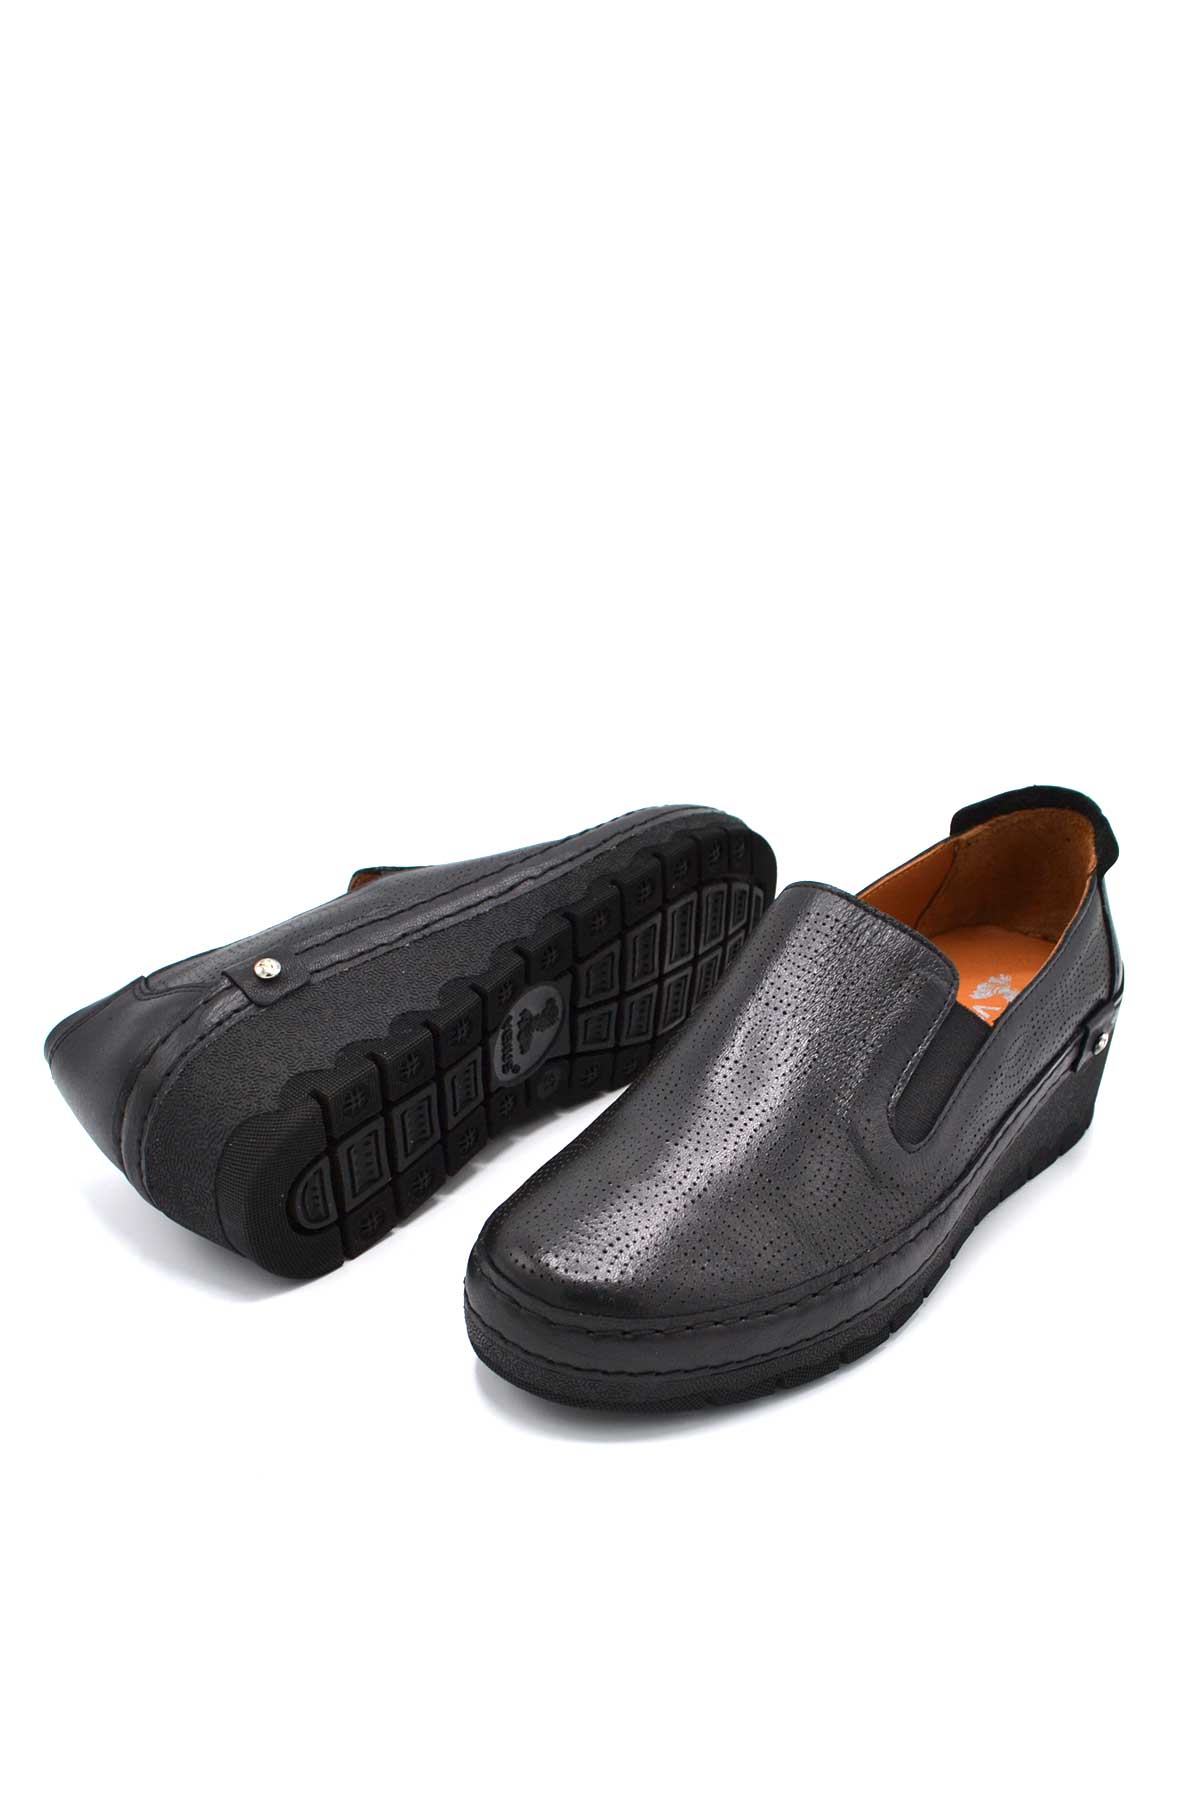 Kadın Casual Deri Sneakers Siyah 2213501Y